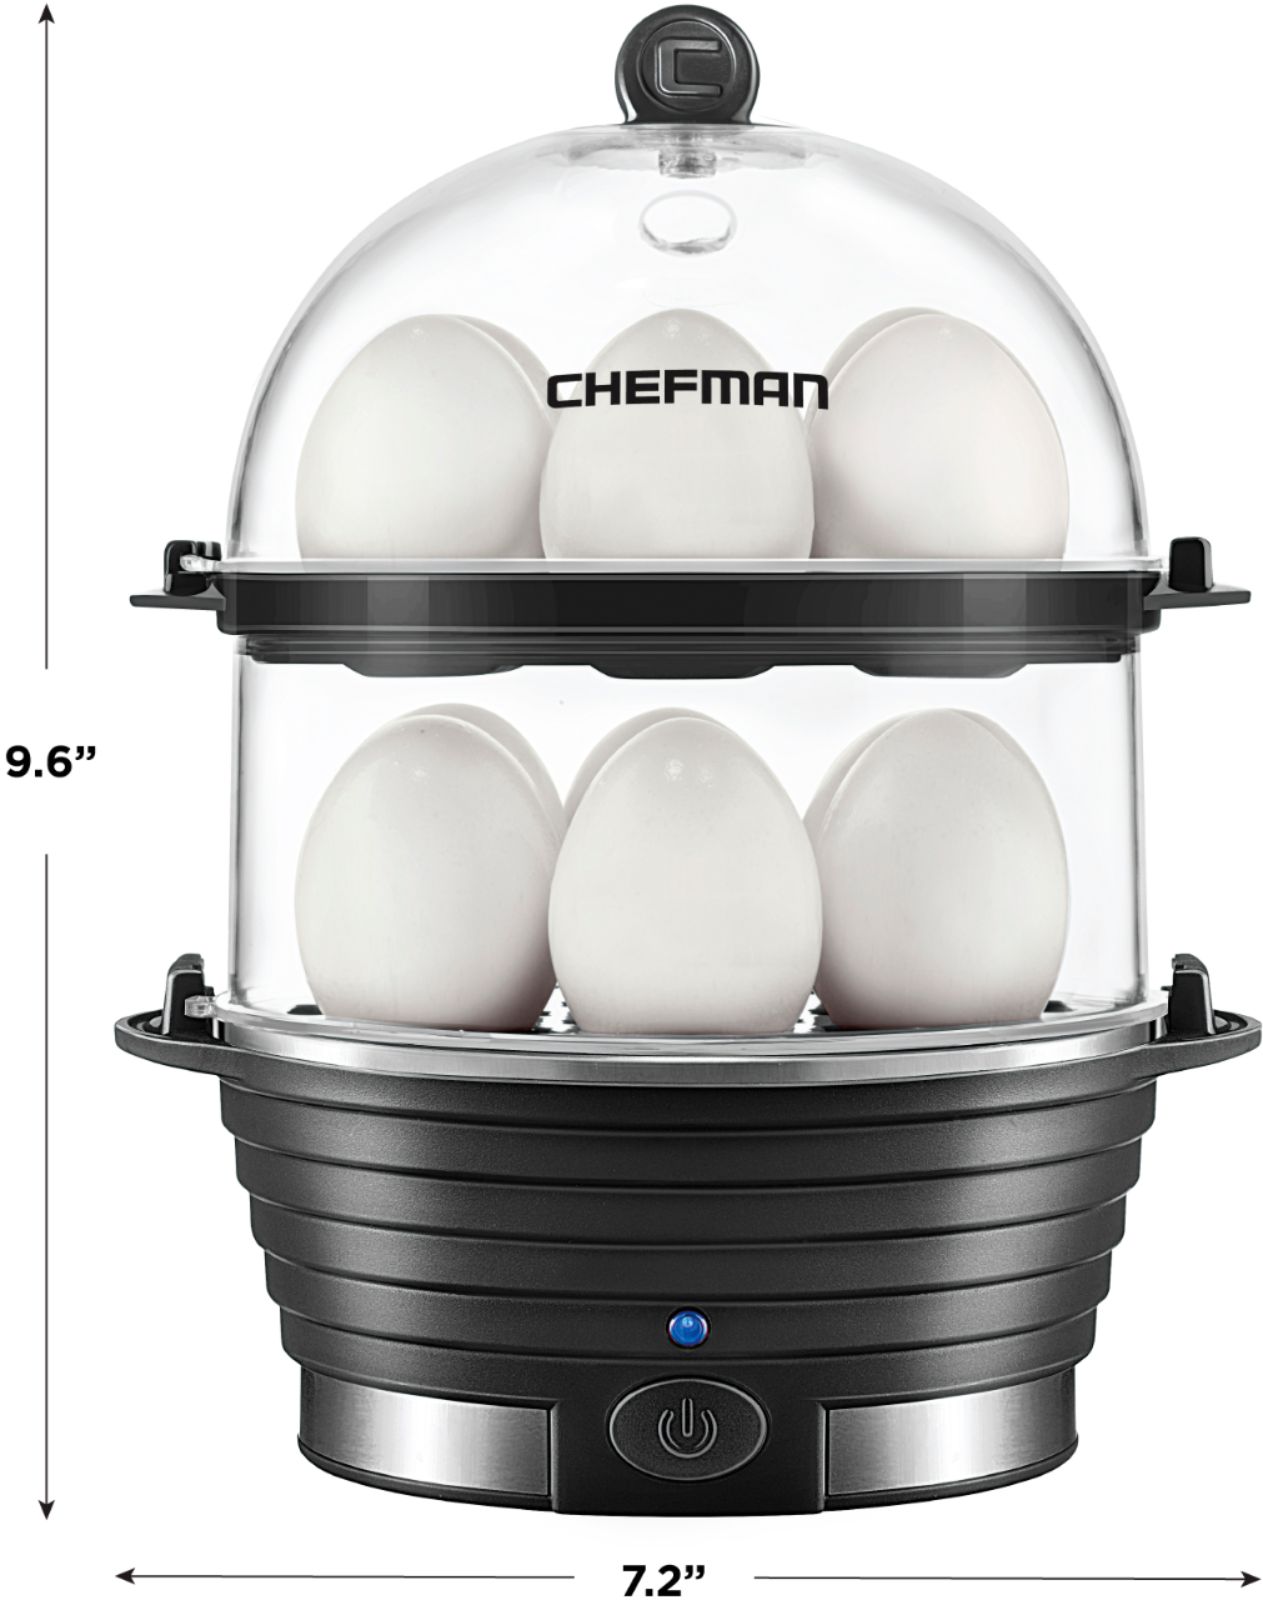 Chefman Electric Double Decker Egg Cooker Black RJ24  - Best Buy